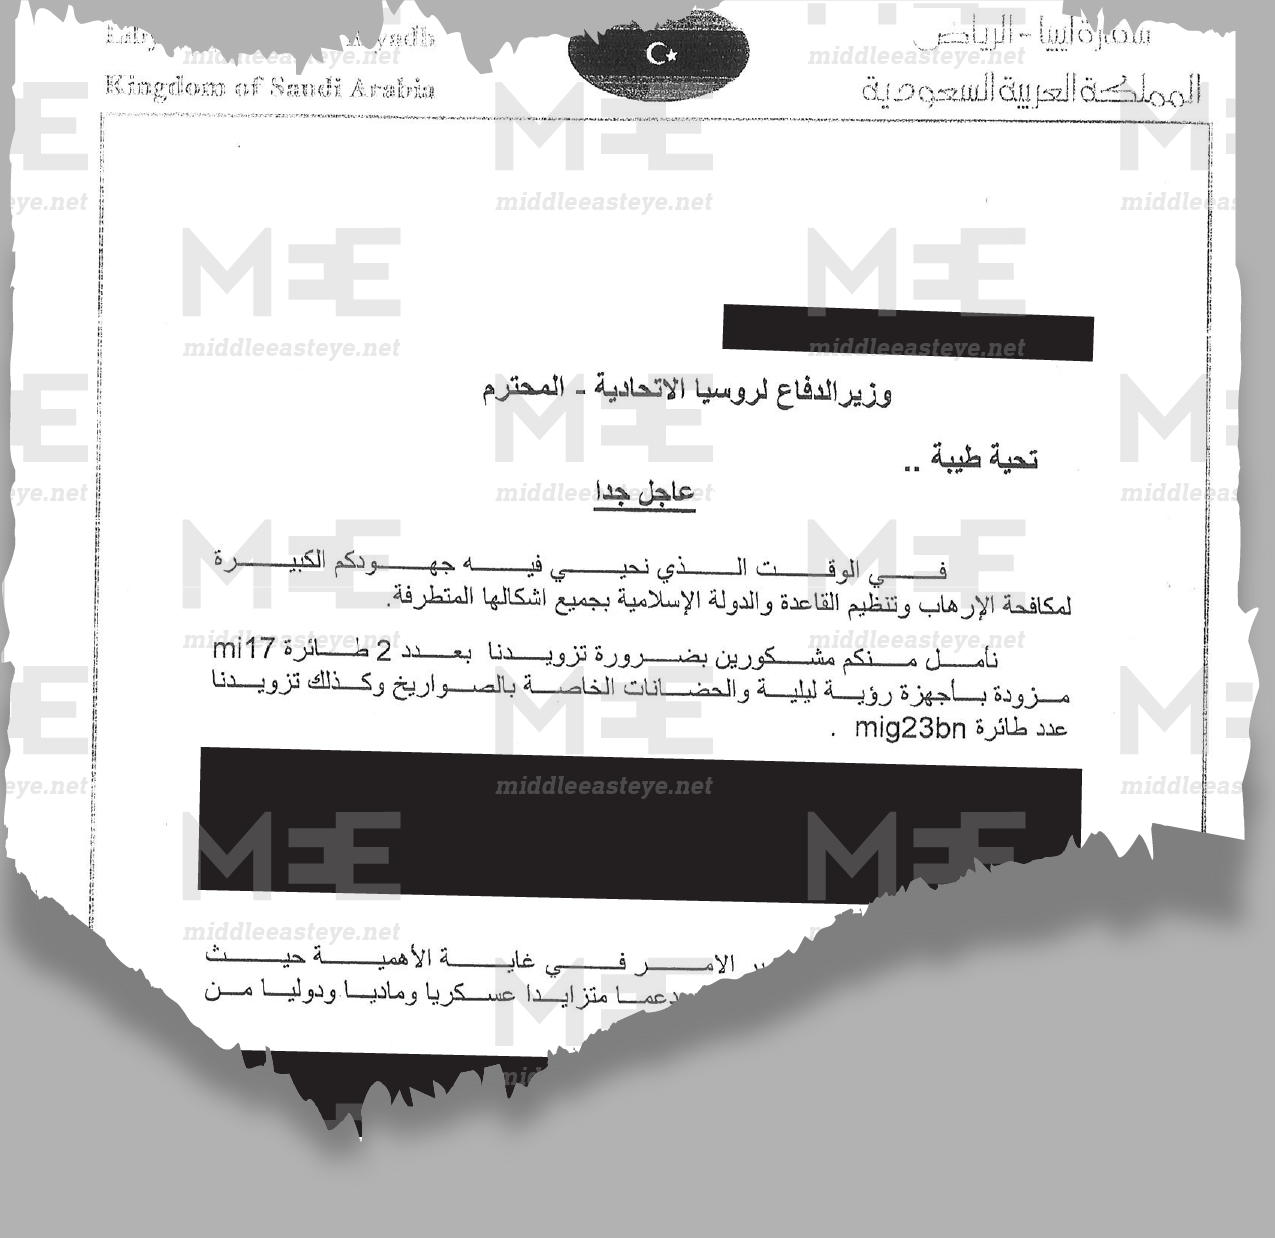 Un extrait de la lettre envoyée par l’émissaire de Khalifa Haftar en Russie, l’ambassadeur Abdul-Basit al-Badri, demandant au ministre de la Défense Sergueï Choïgou des avions de chasse MiG-23 et des hélicoptères Mi-17 (MEE/document fourni)